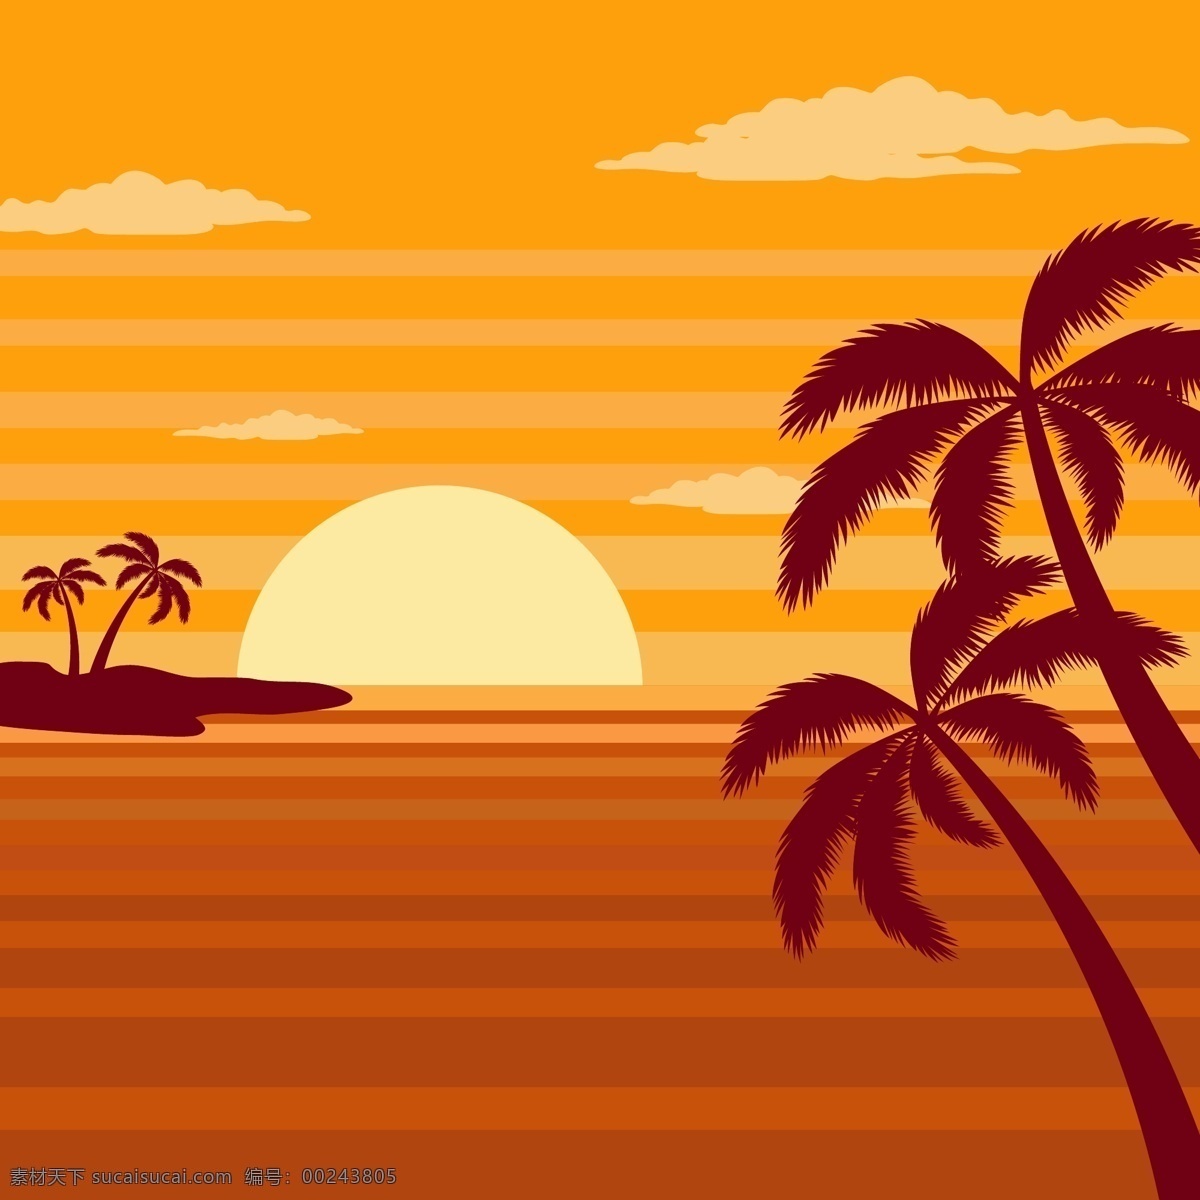 夕阳 下 大海 棕榈树 矢量图 云朵 岛屿 自然 沙滩 动漫动画 风景漫画